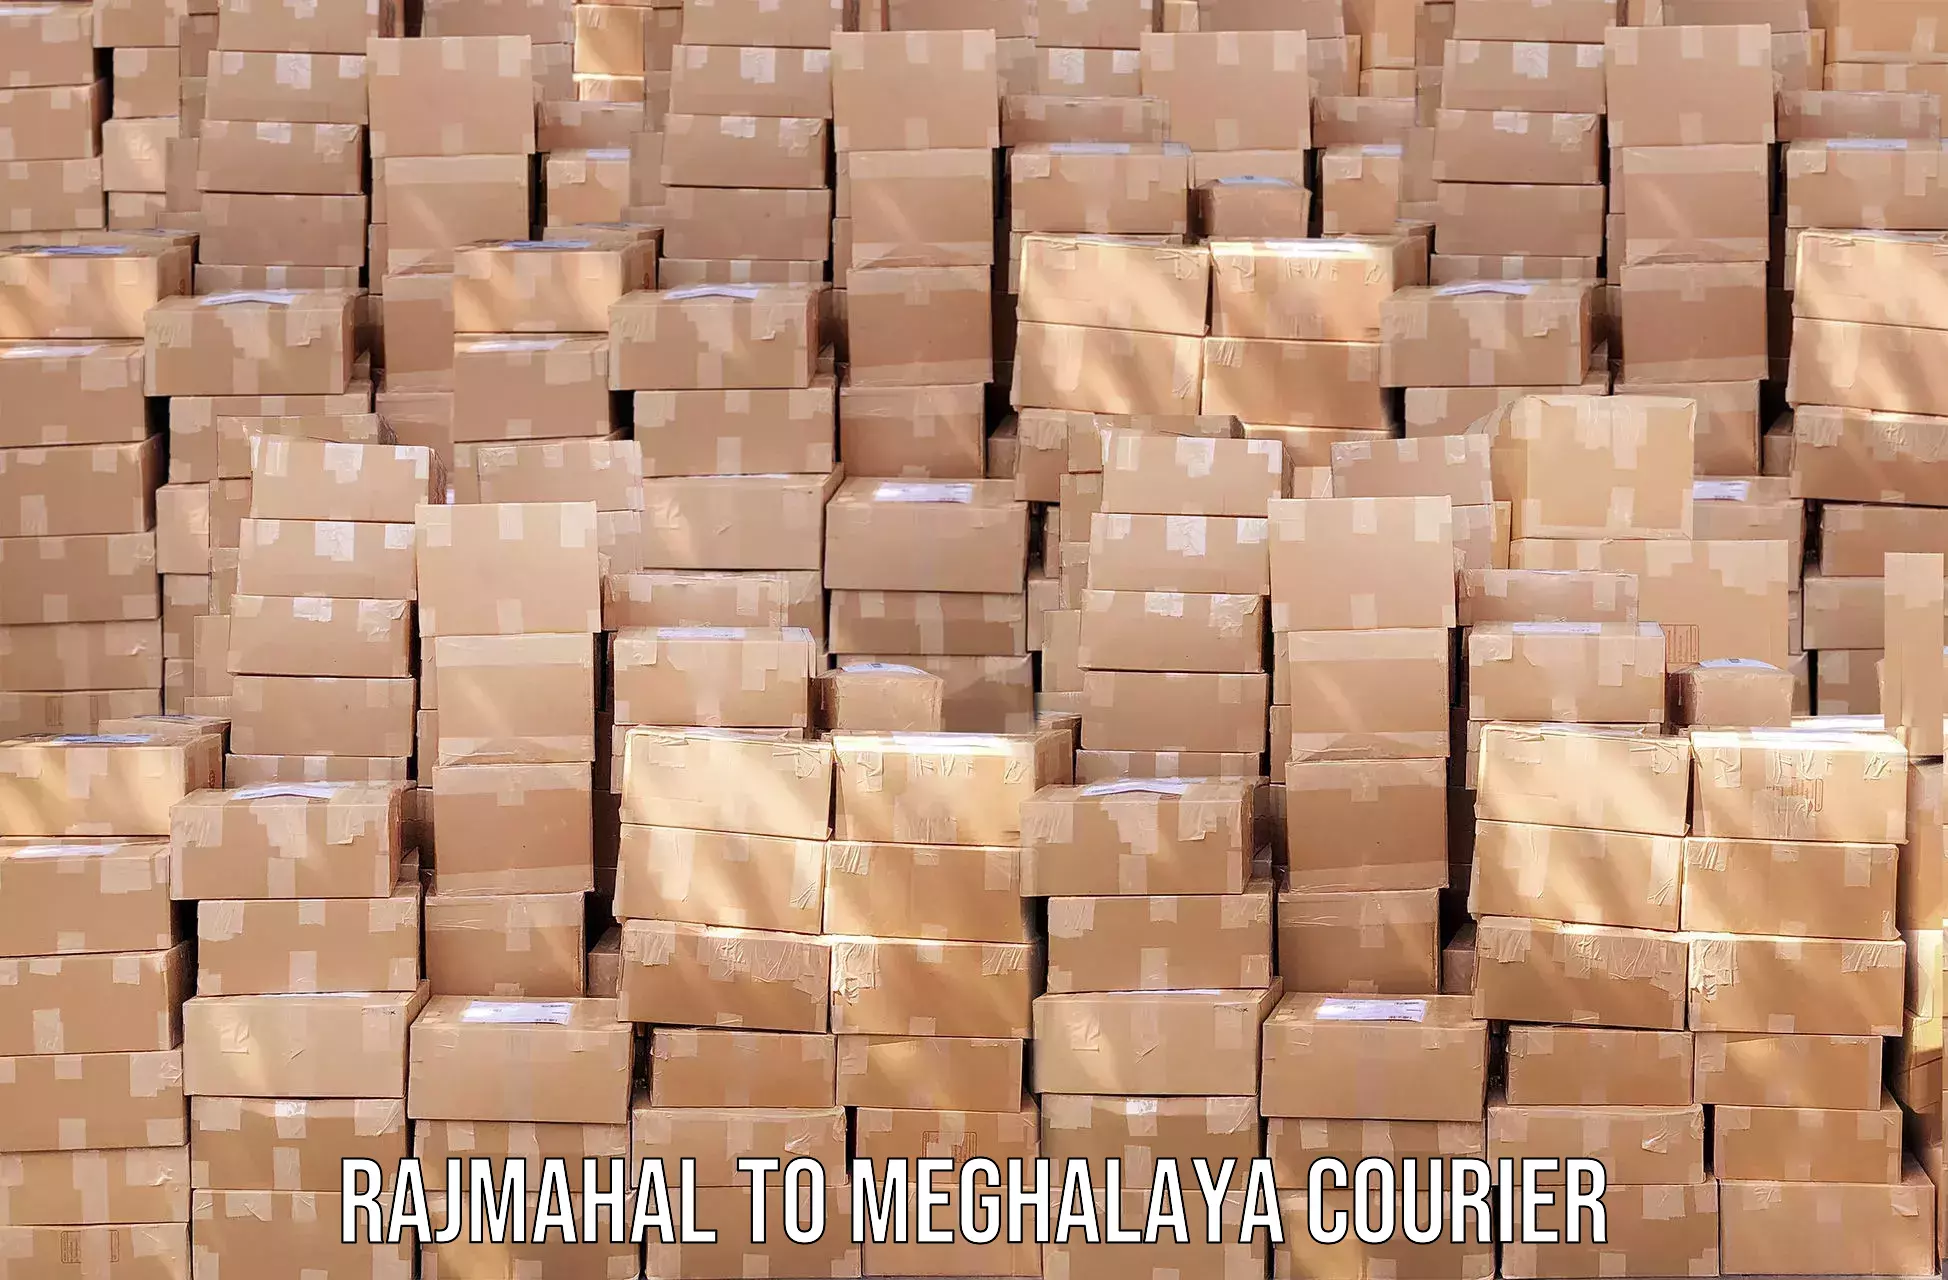 Efficient cargo services Rajmahal to Meghalaya